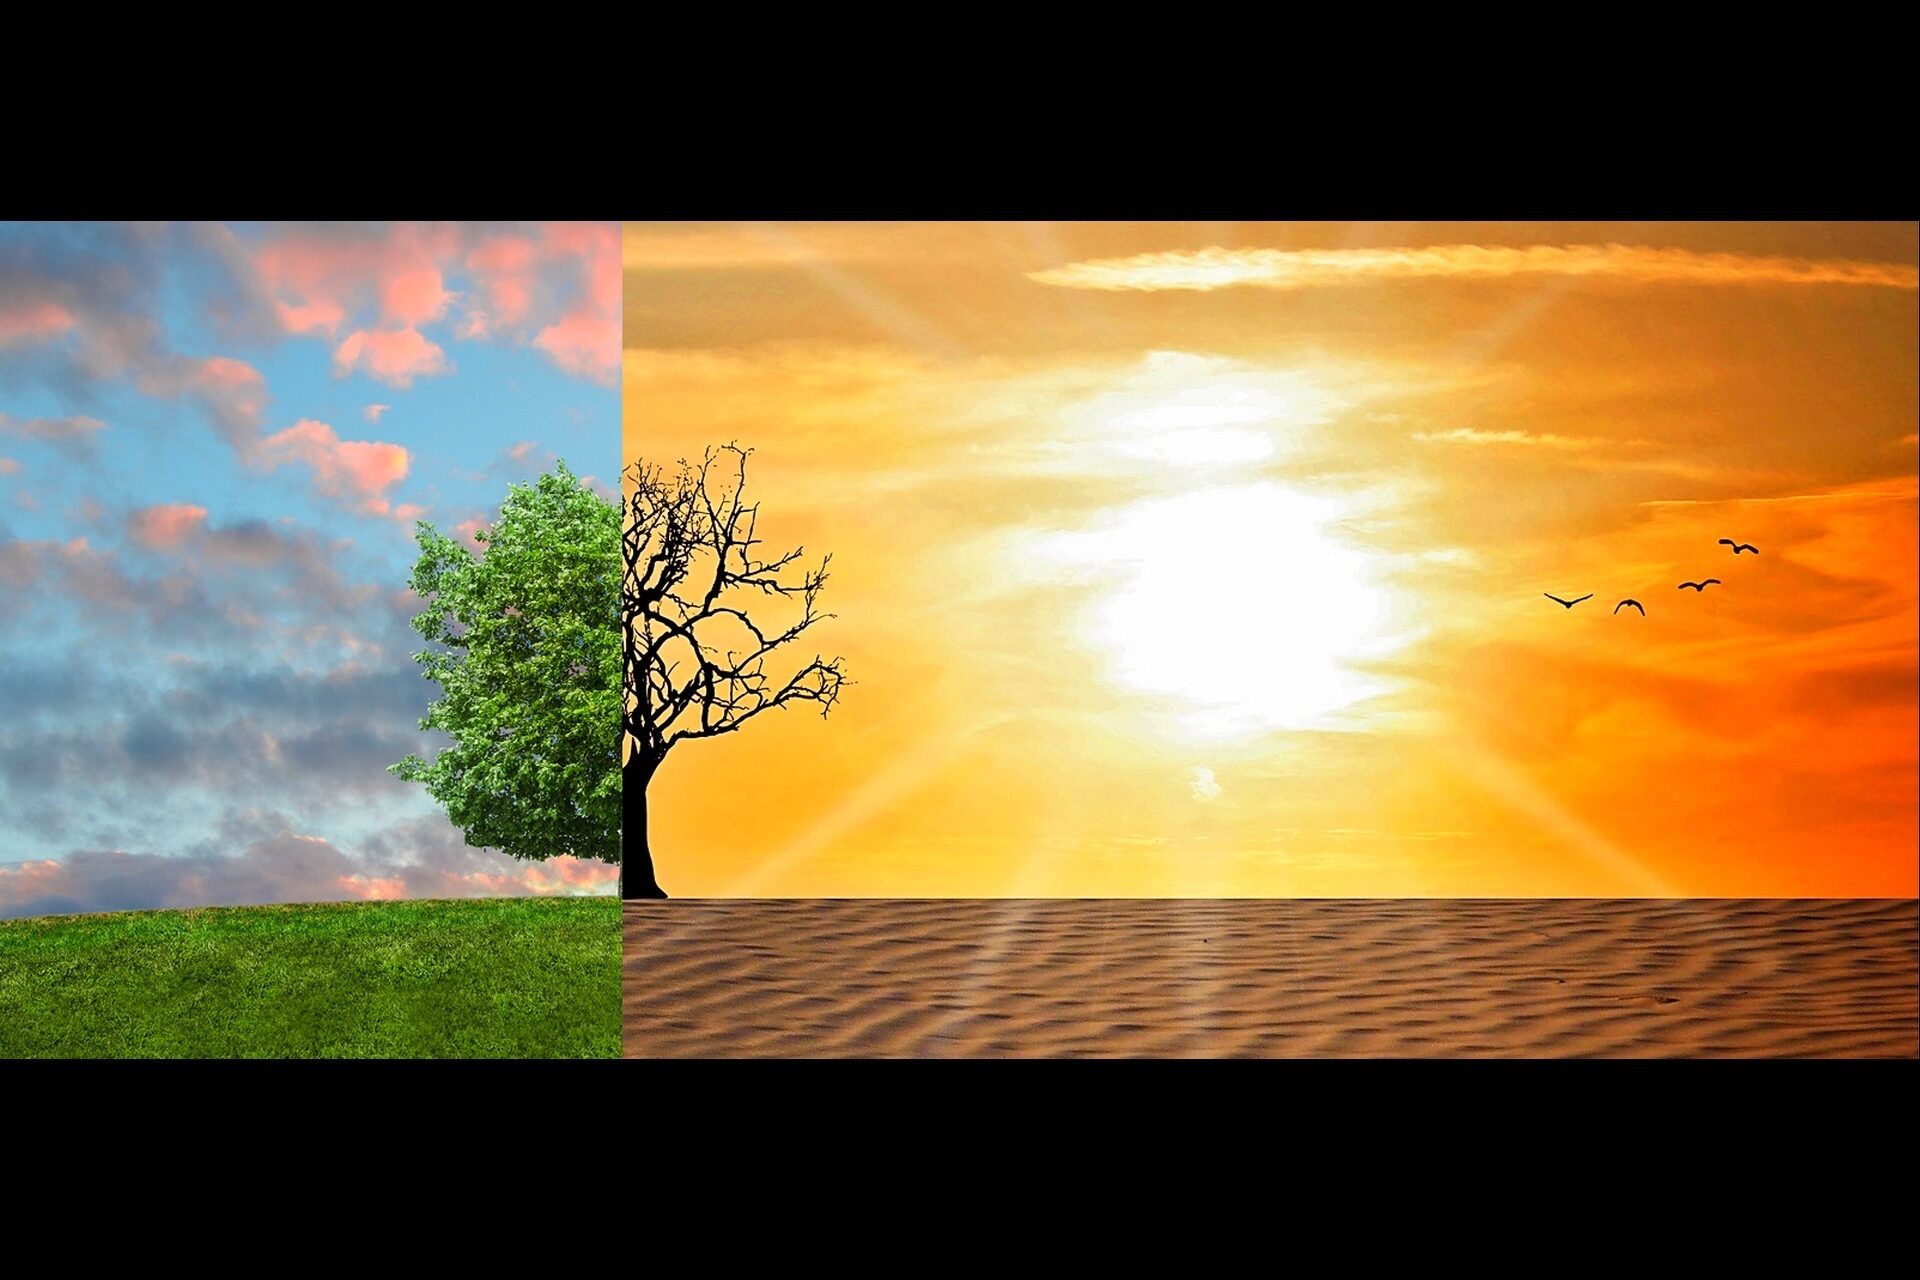 Abbildung zur Hälfte eines grünen Baumes auf grünem Rasen und zur Hälfte eines verdorrten Baumes auf sandigem Boden zur Veranschaulichung des Klimawandels.